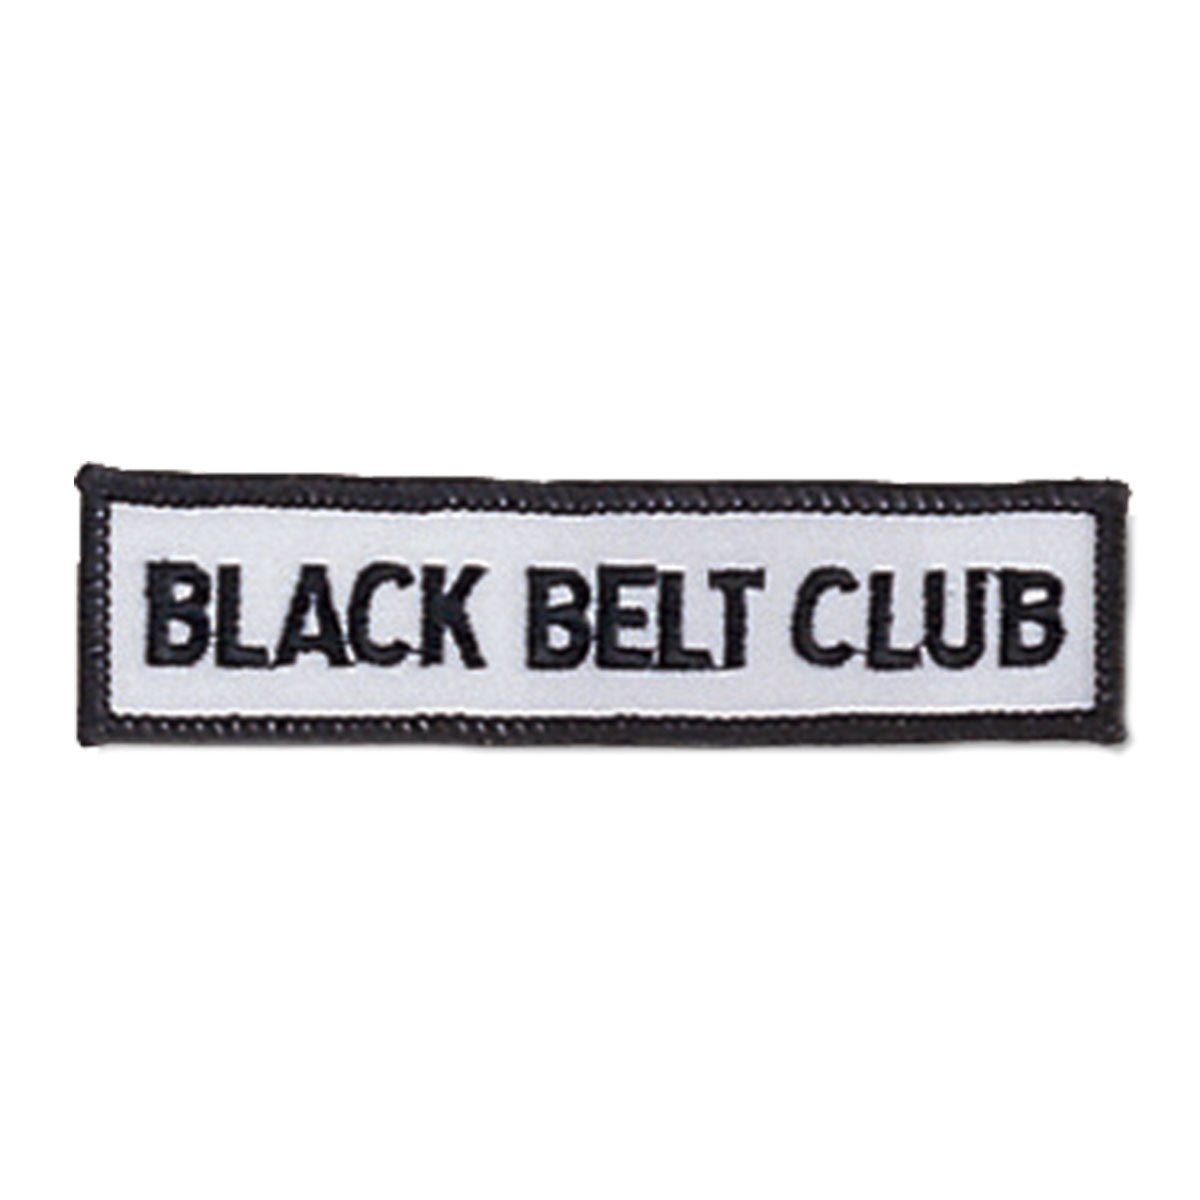 Iron-On Black Belt Club Patch